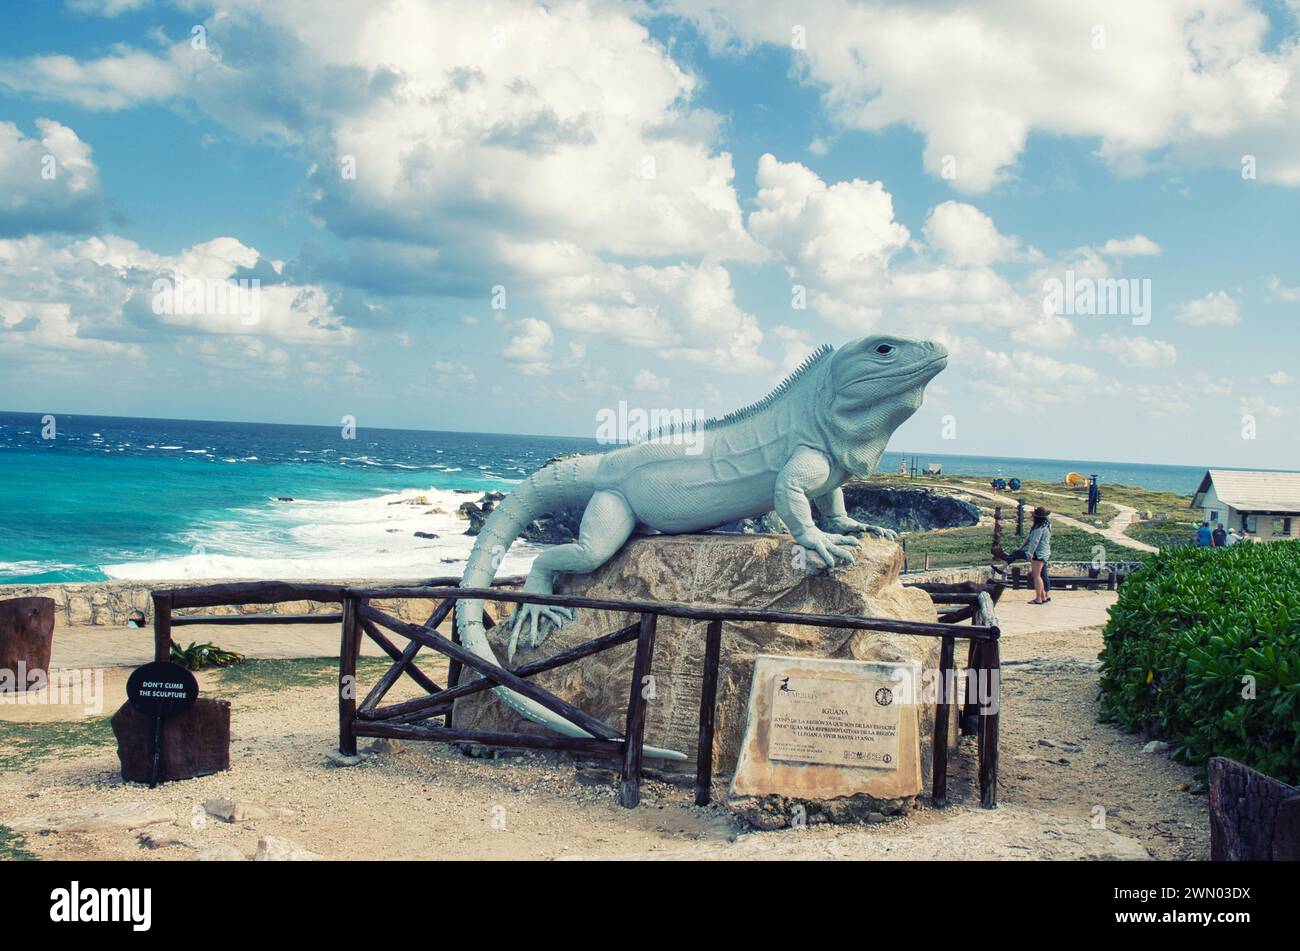 ISLA MUJERES, MESSICO - 20 febbraio 2016: Statua di una grande iguana dalla coda spinosa nera a Punta Sur, isola di Isla Mujeres con il Mar dei Caraibi sullo sfondo. Foto Stock